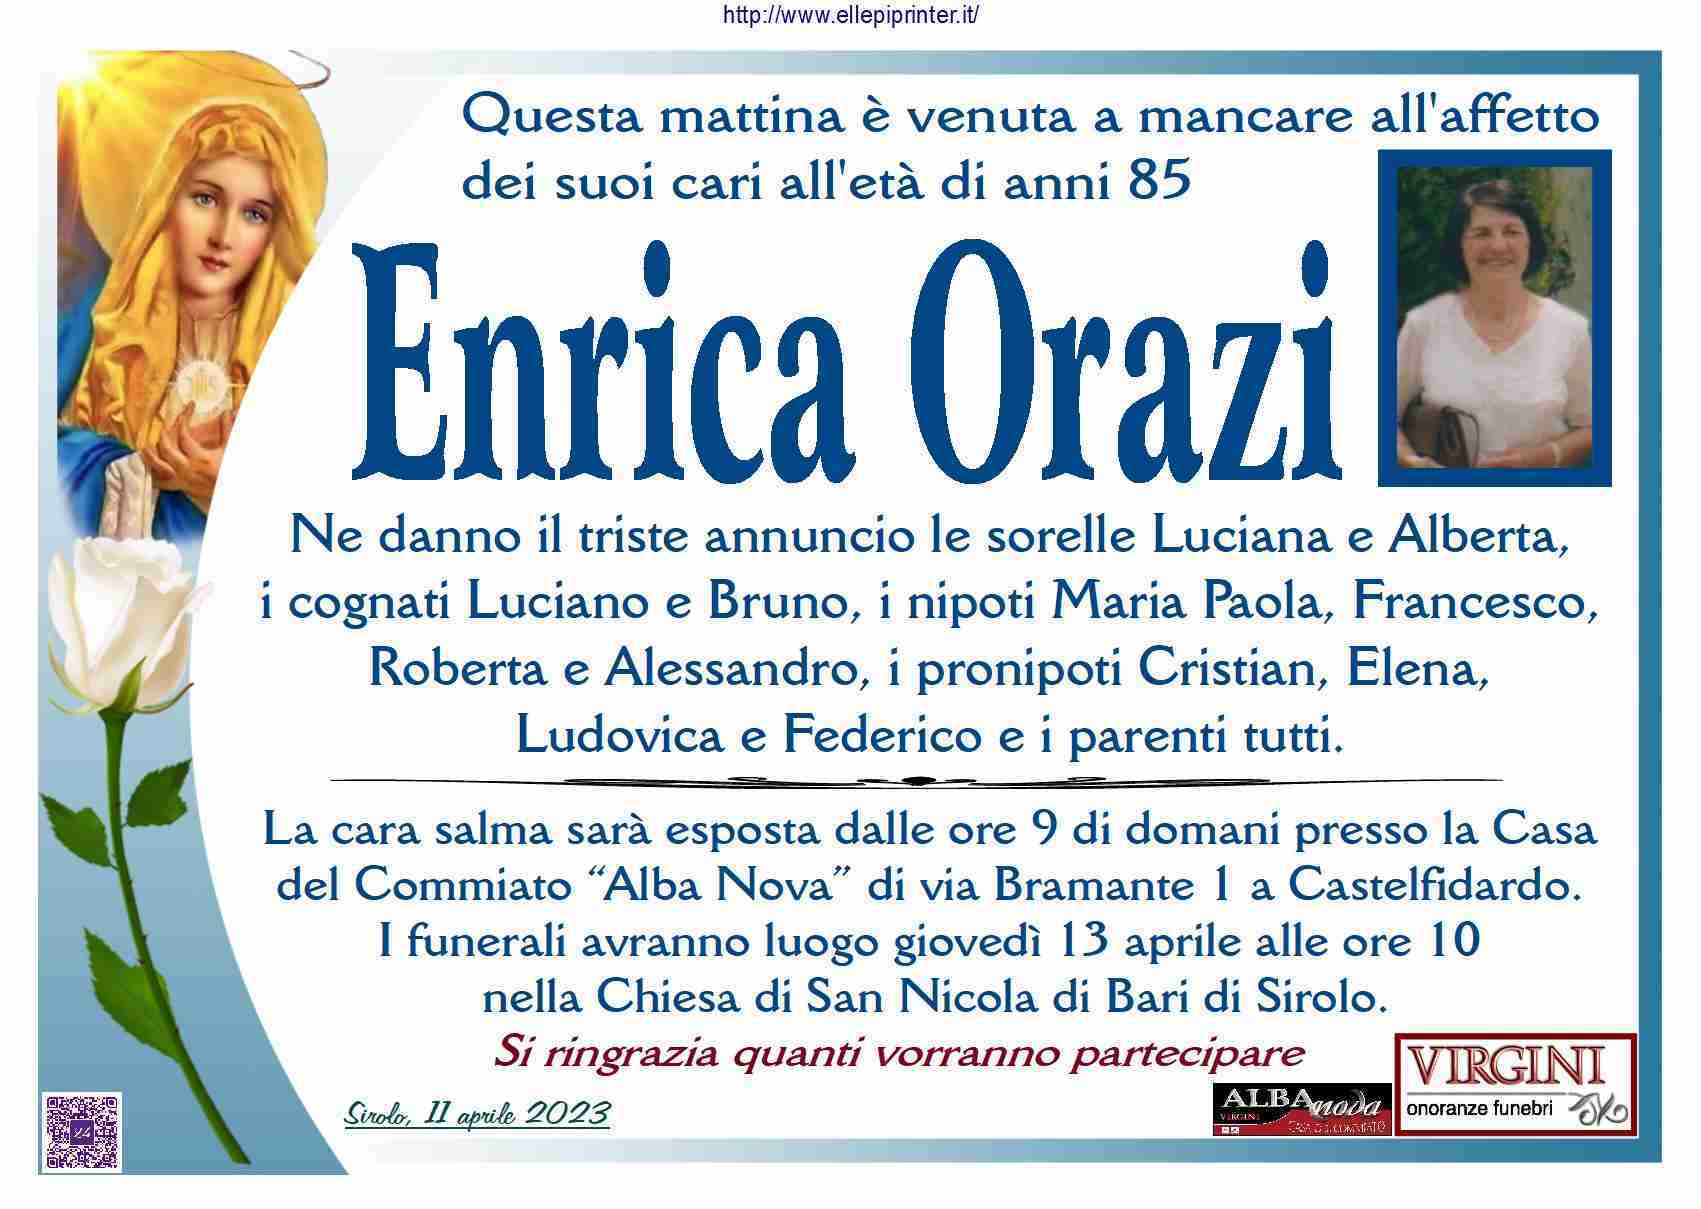 Enrica Orazi